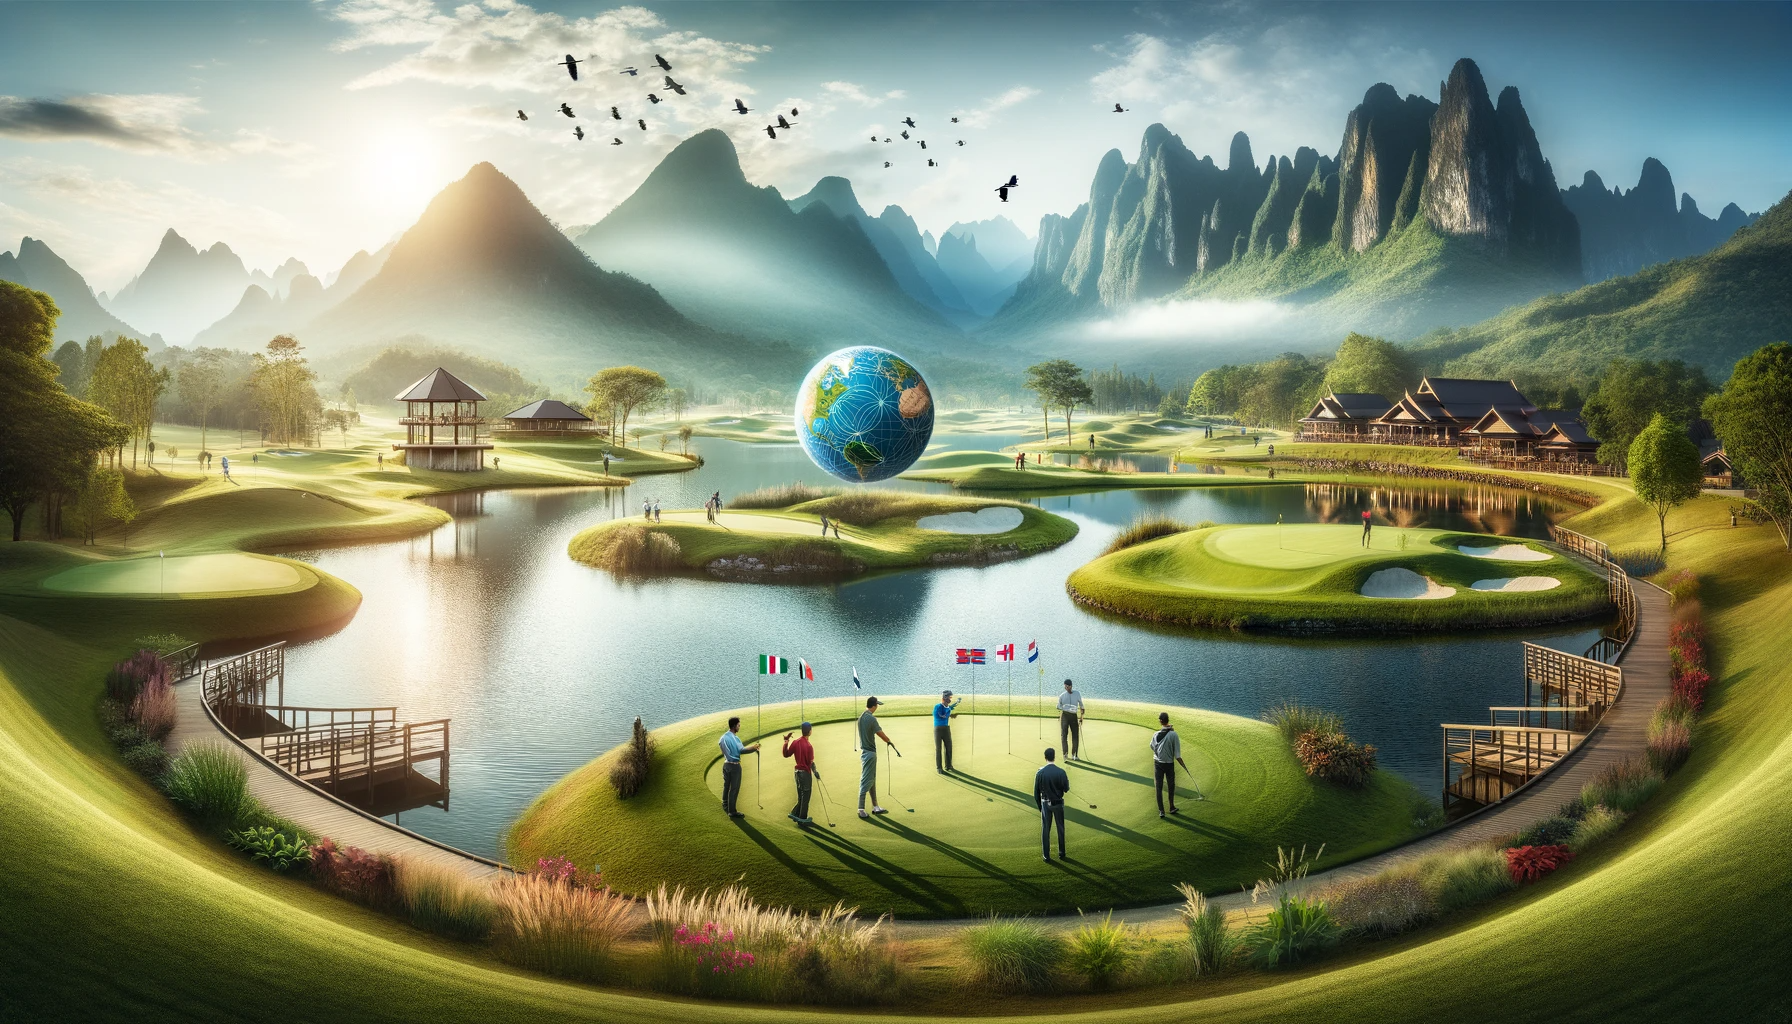 골프 여행의 묘미: 세계 명소 코스와 풍경의 아름다움 - 골프의 매력: 아름다운 풍경&#44; 문화와 역사&#44; 국제적인 친목